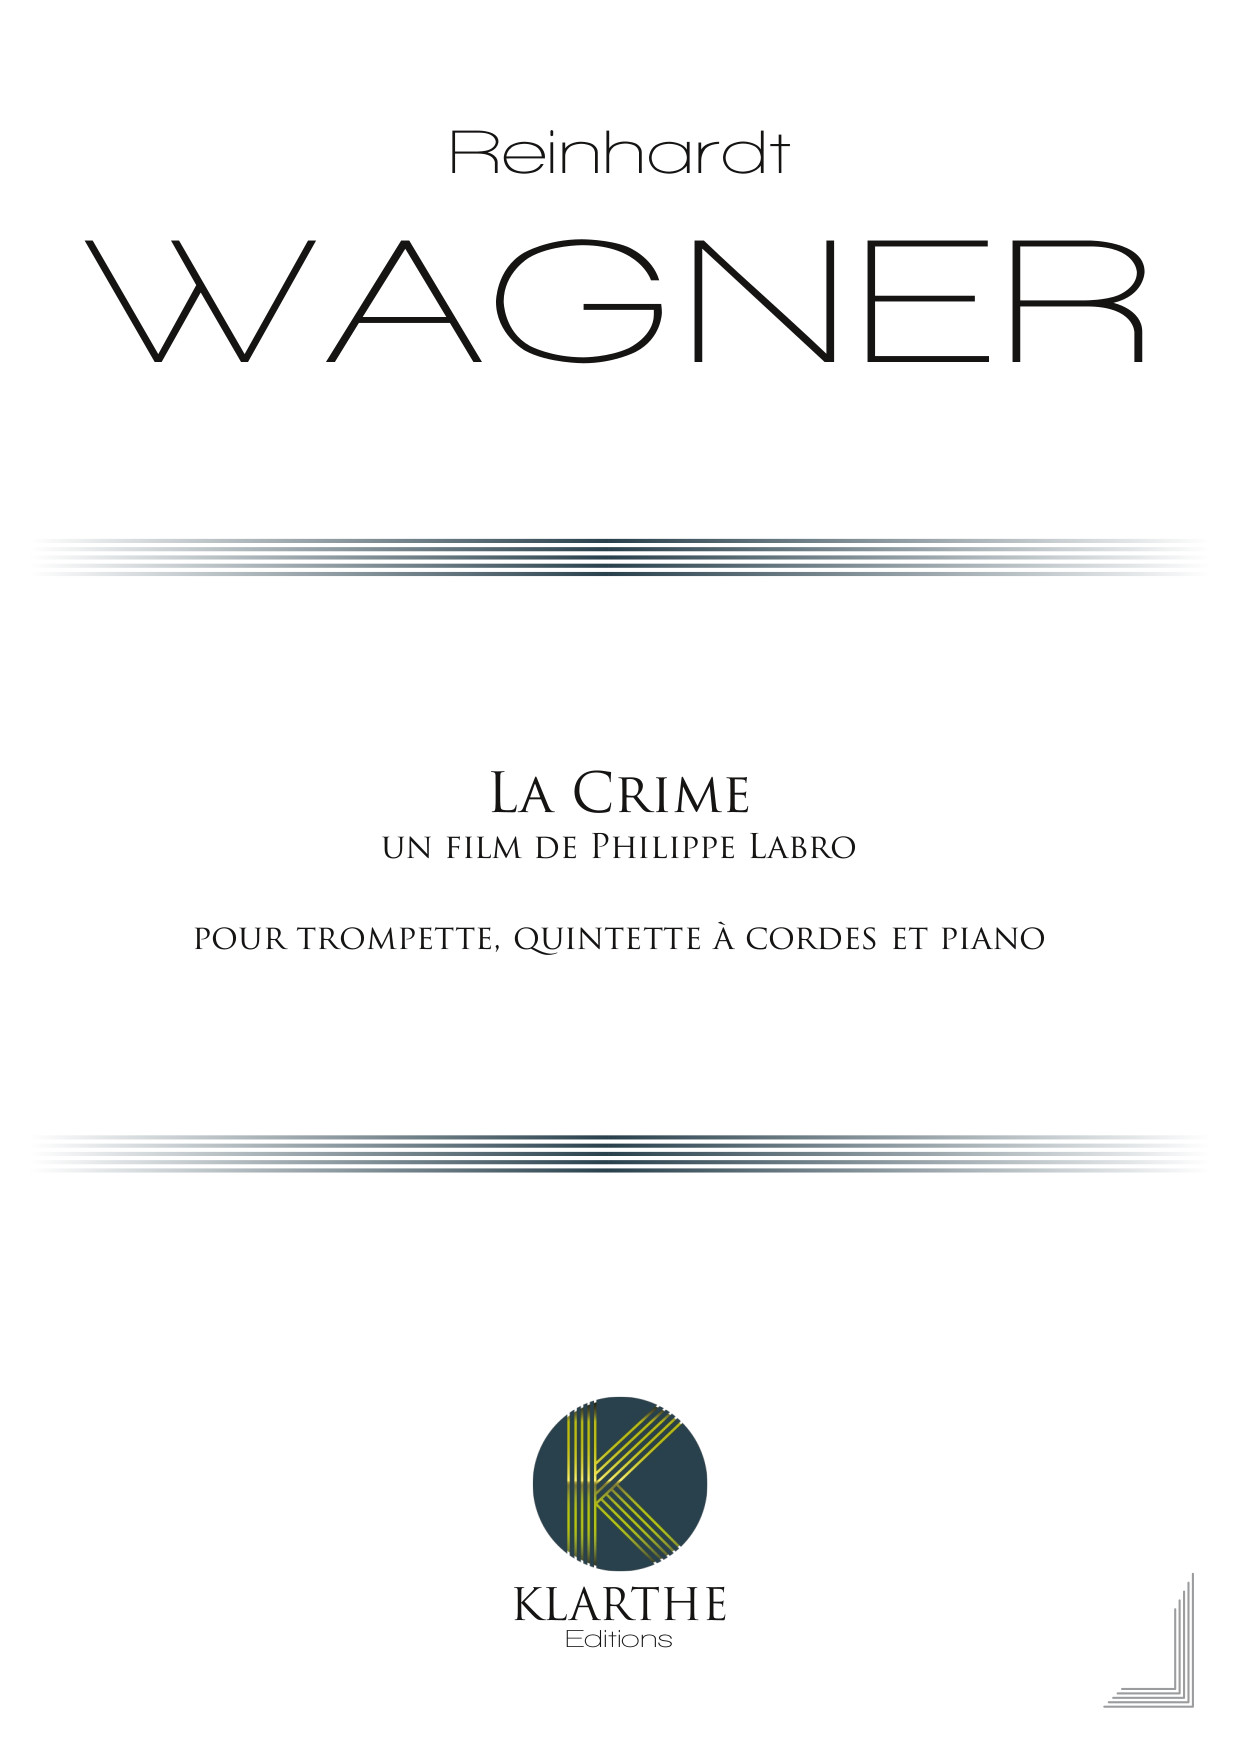 La Crime (WAGNER REINHARDT)